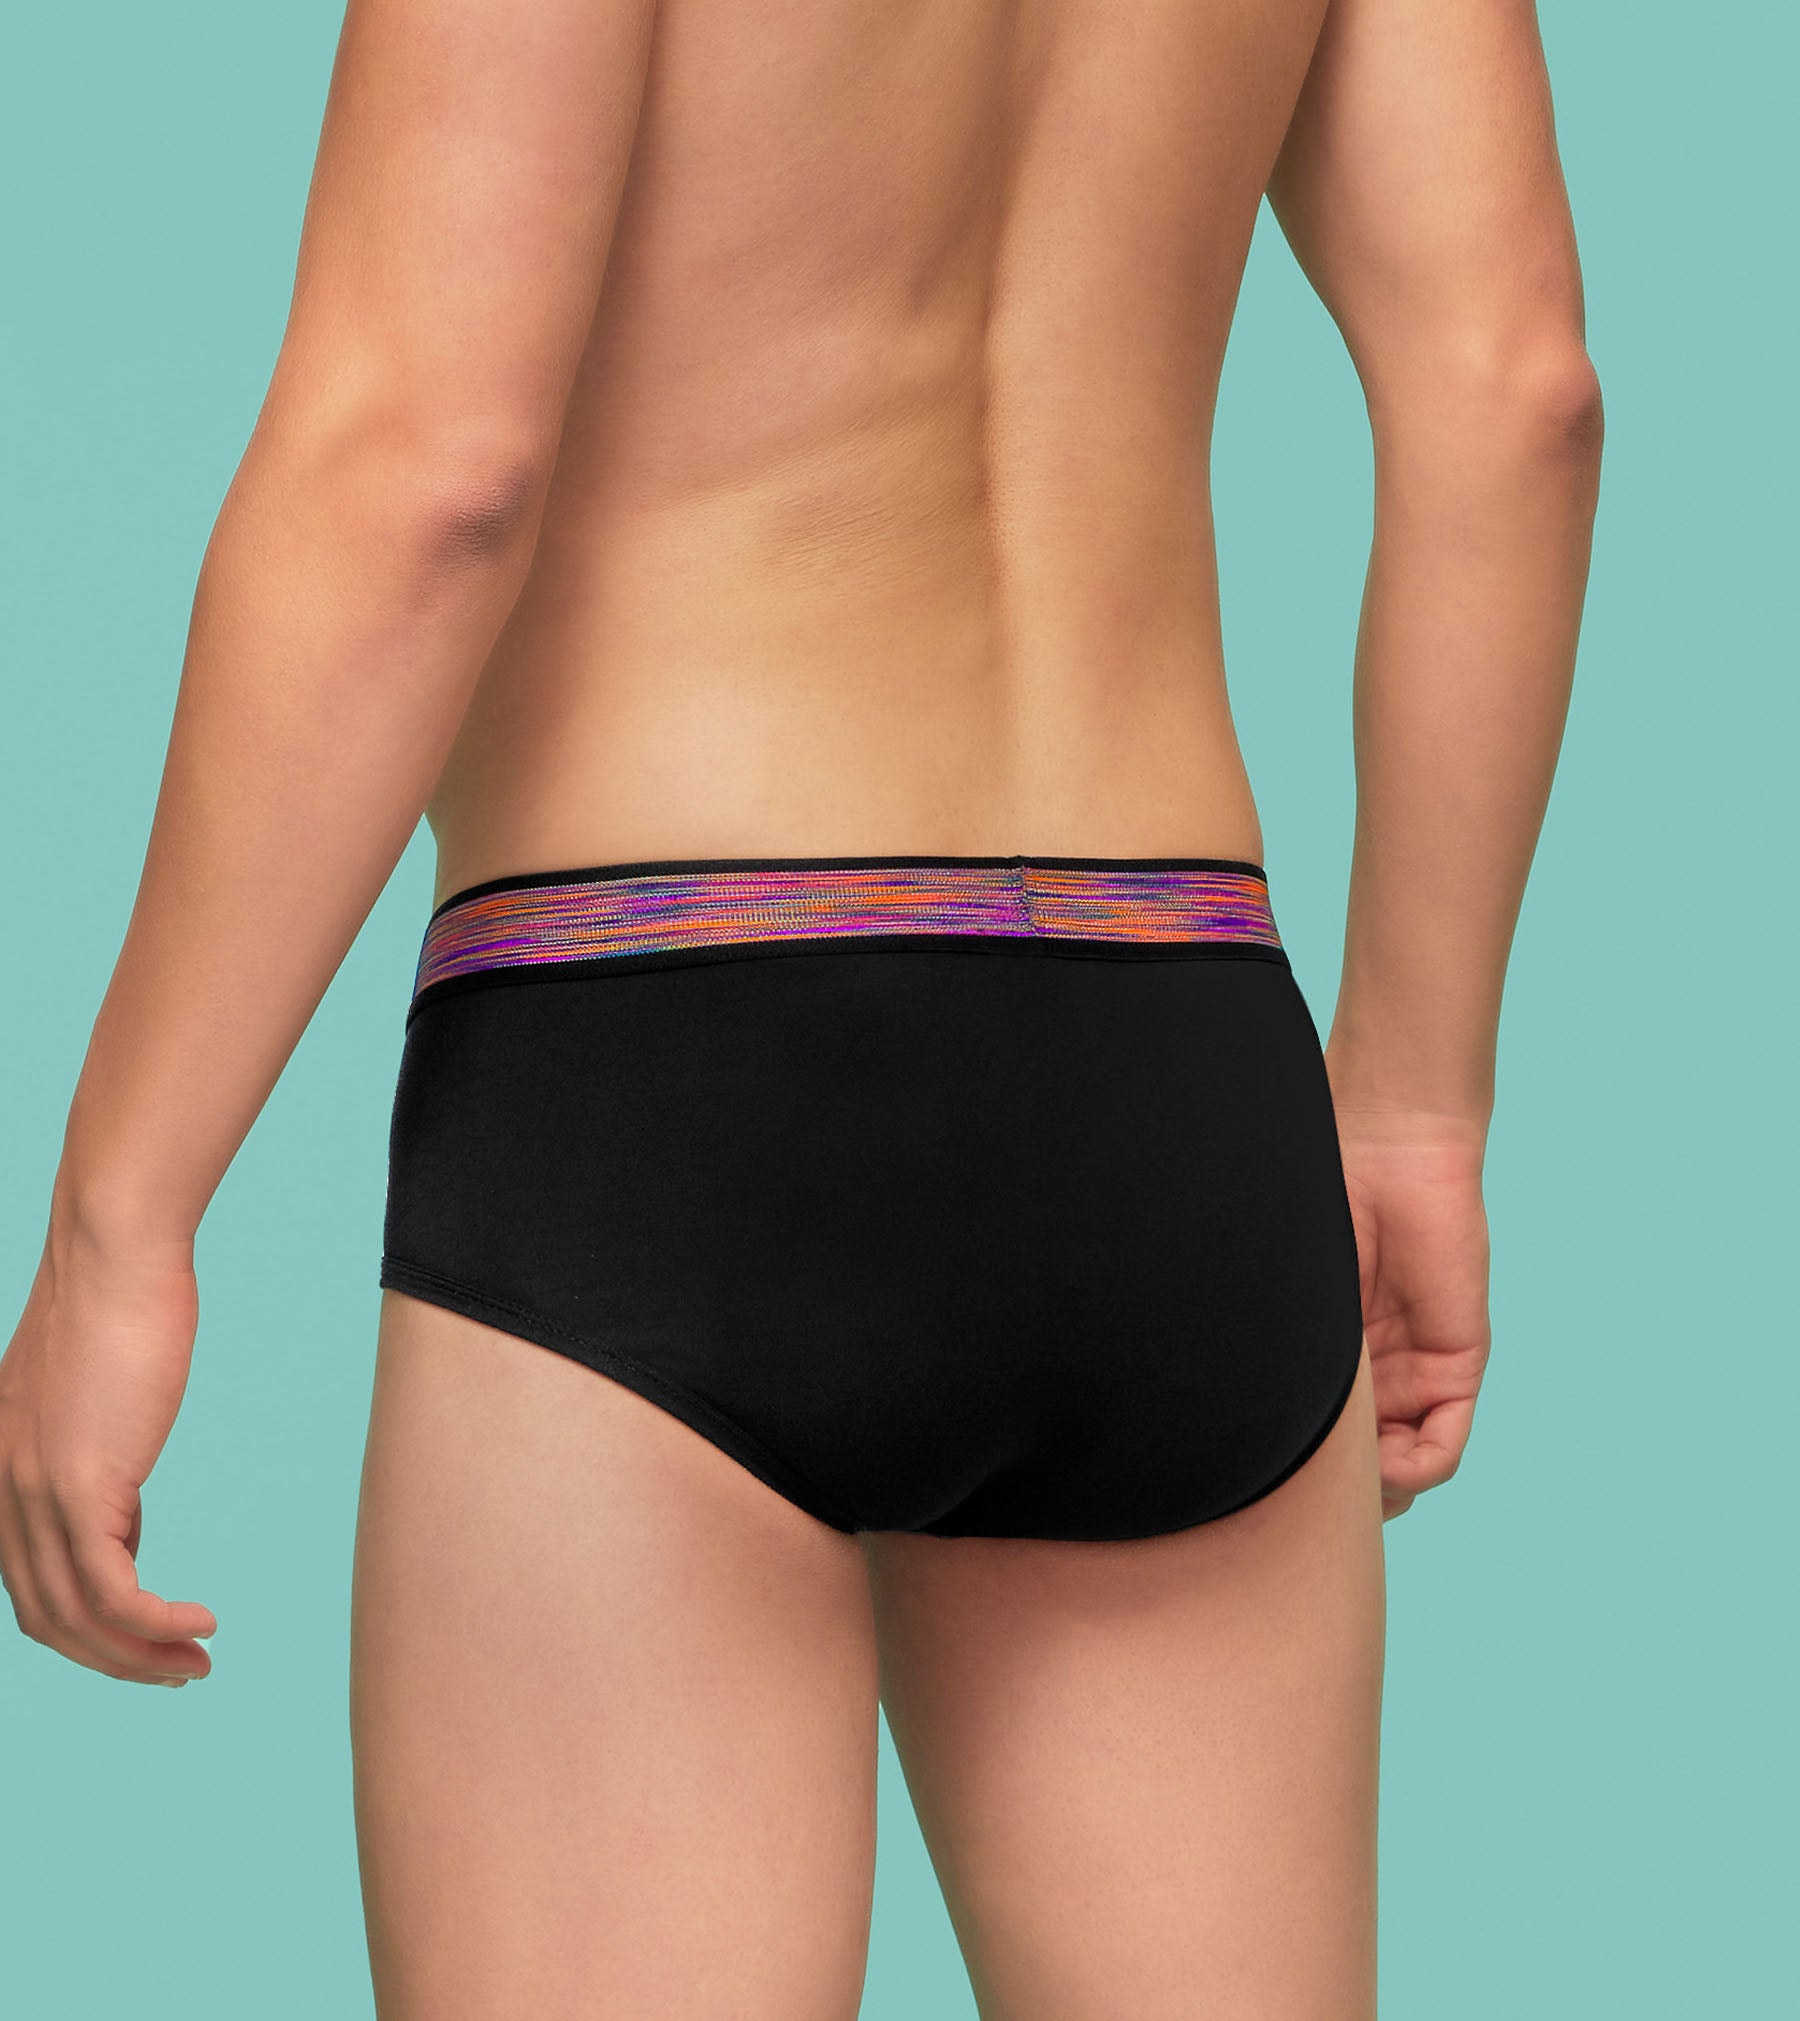 TENCEL™ Modal Underwear – NEIWAI